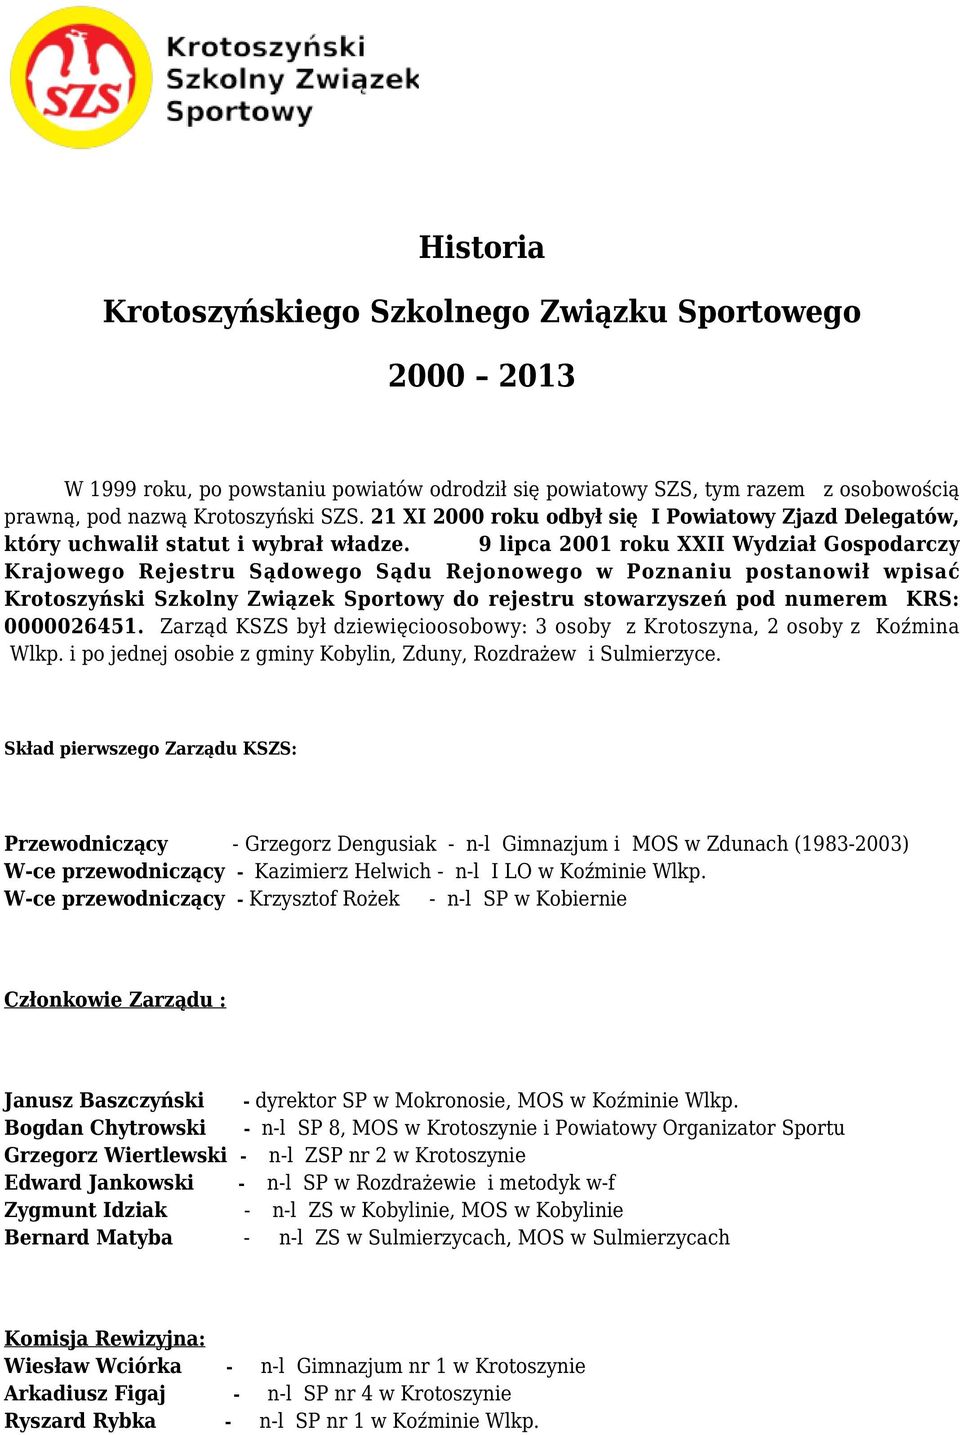 9 lipca 2001 roku XXII Wydział Gospodarczy Krajowego Rejestru Sądowego Sądu Rejonowego w Poznaniu postanowił wpisać Krotoszyński Szkolny Związek Sportowy do rejestru stowarzyszeń pod numerem KRS: